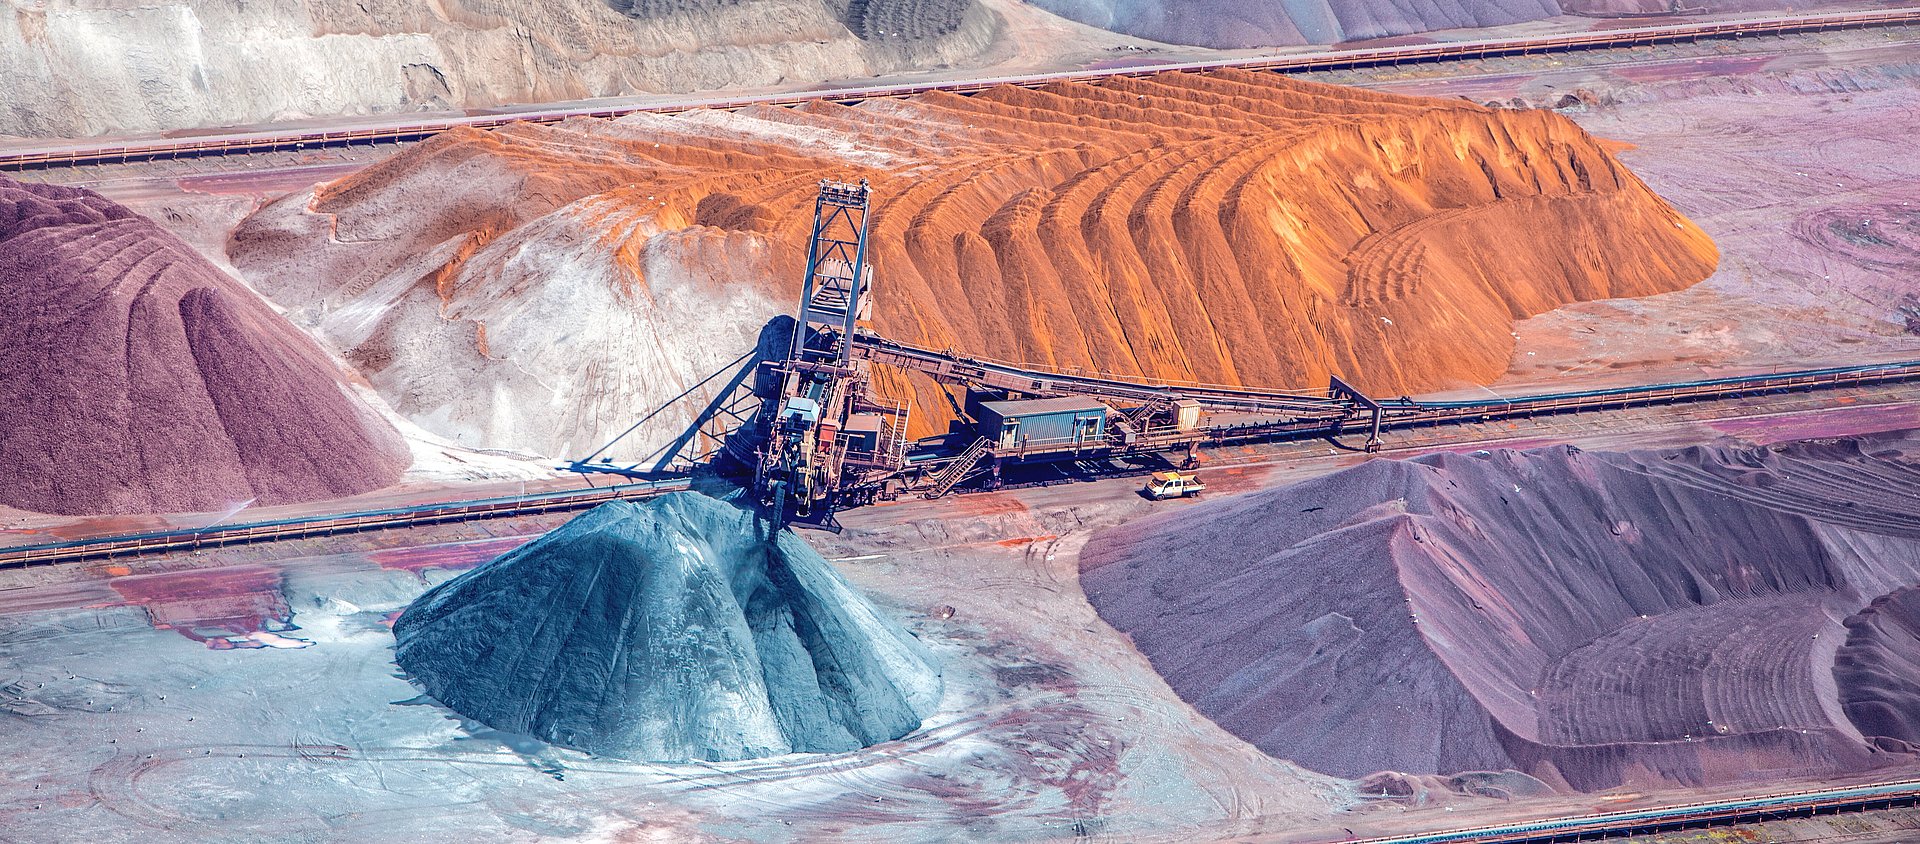 Bunte Mine mit Mineralien, Zement und Grunstoffen: weitere Märkte für die IBU-tec